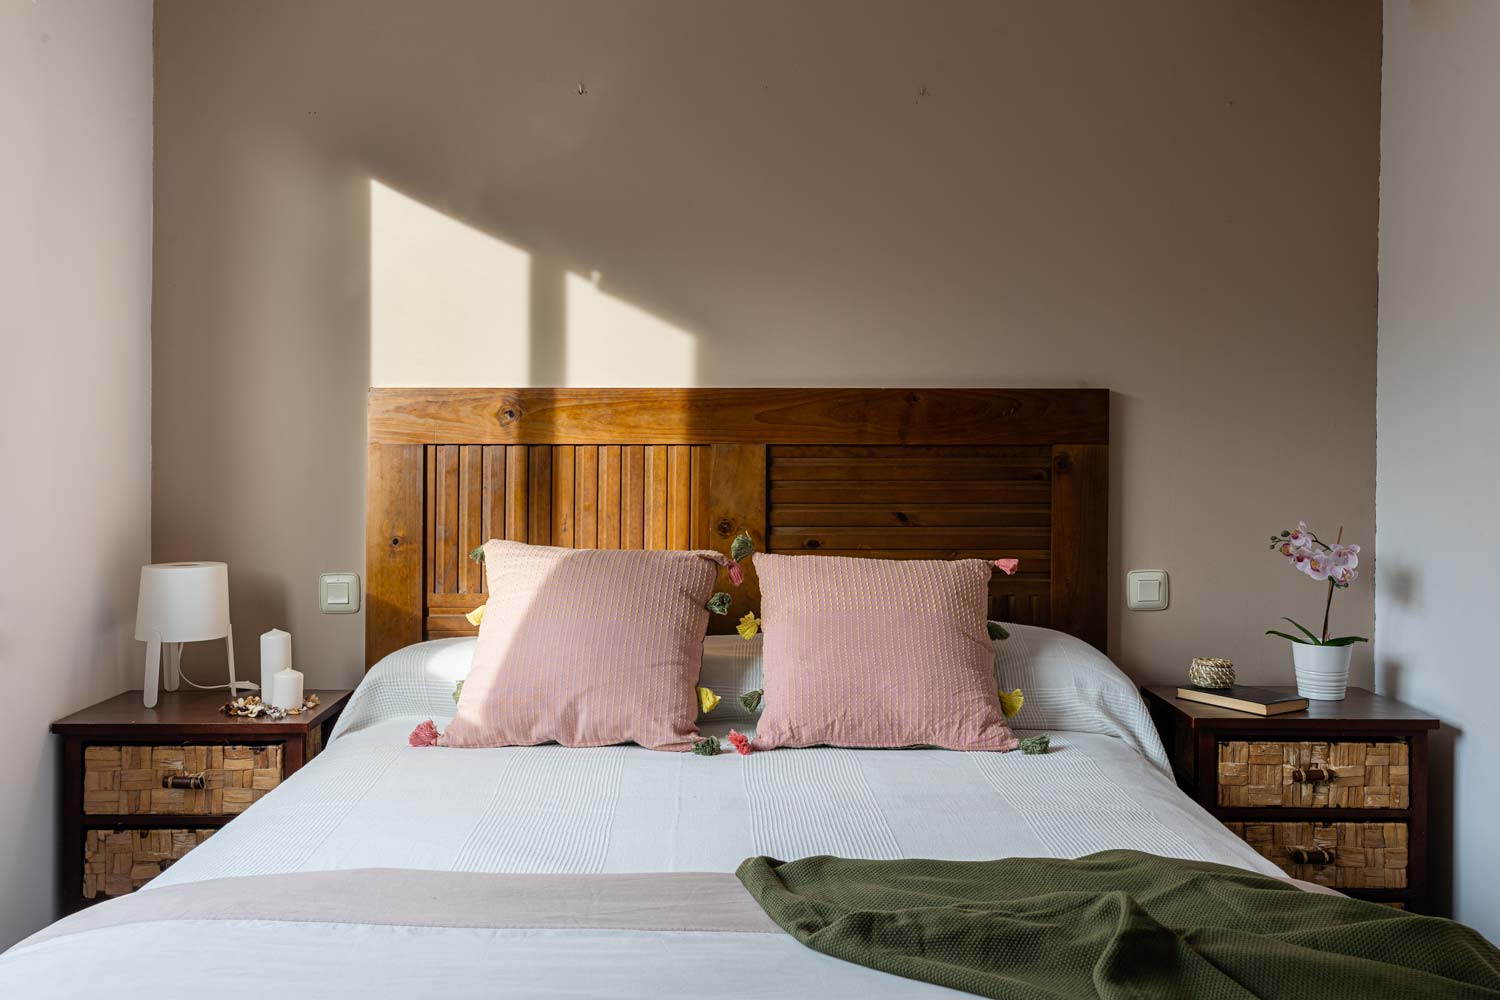 Dormitorio con mobiliario en madera